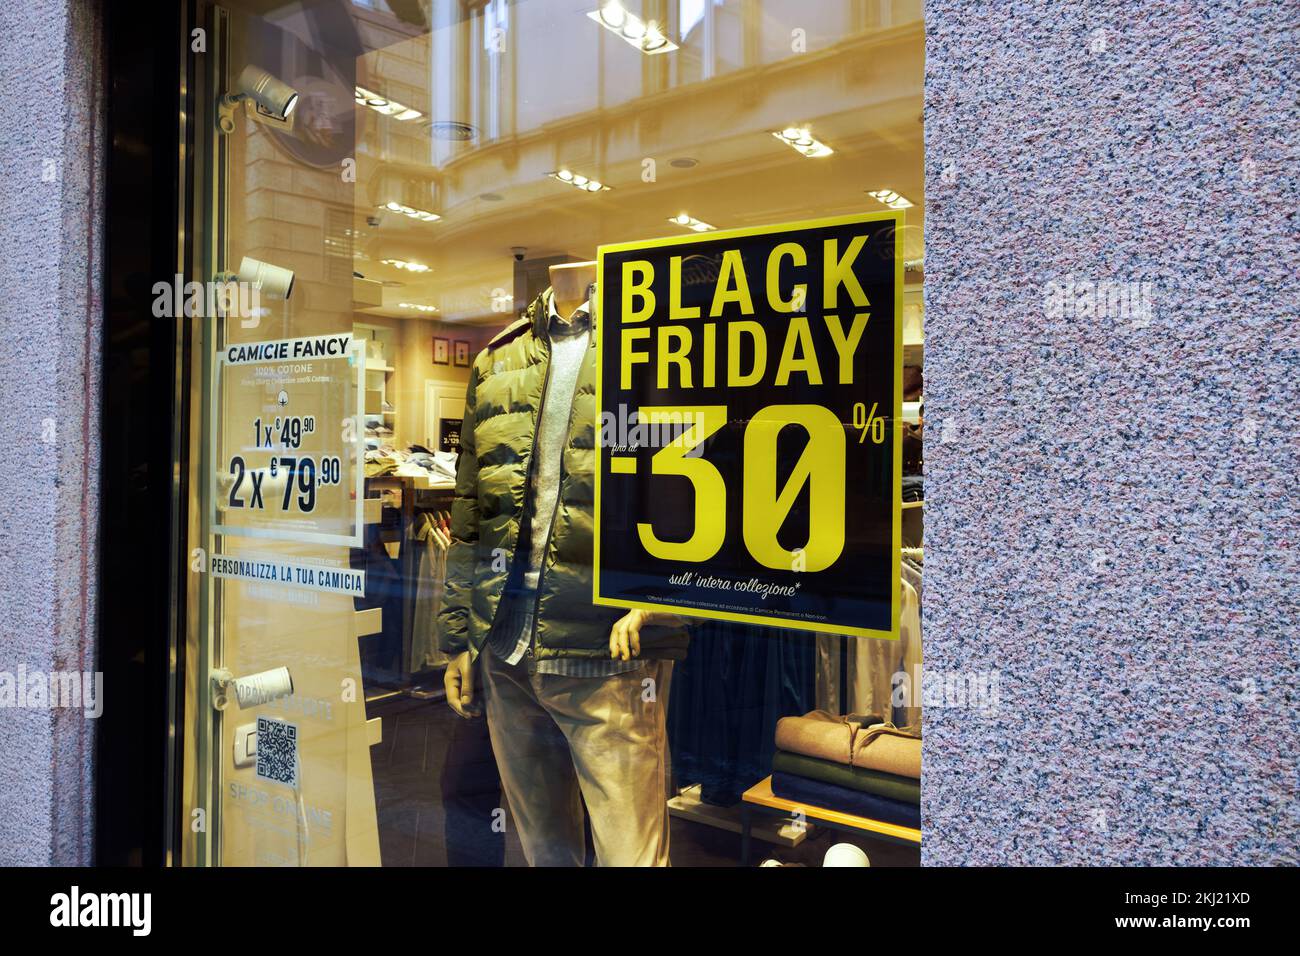 Black Friday-Schild mit Rabattprozentsatz auf Schaufensterausstellung in Mailand, Italien. Stockfoto